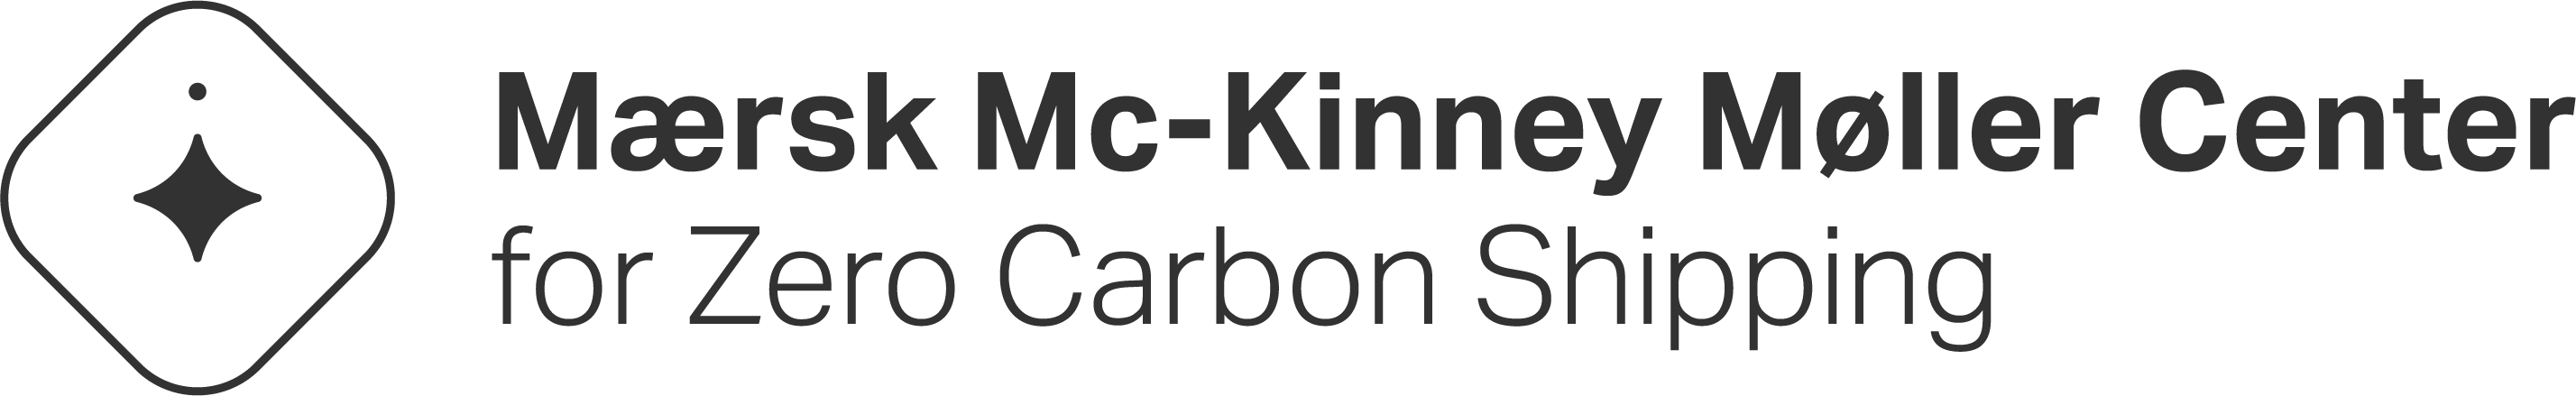 Mærsk Mc-Kinney Møller Center for Zero Carbon Shipping